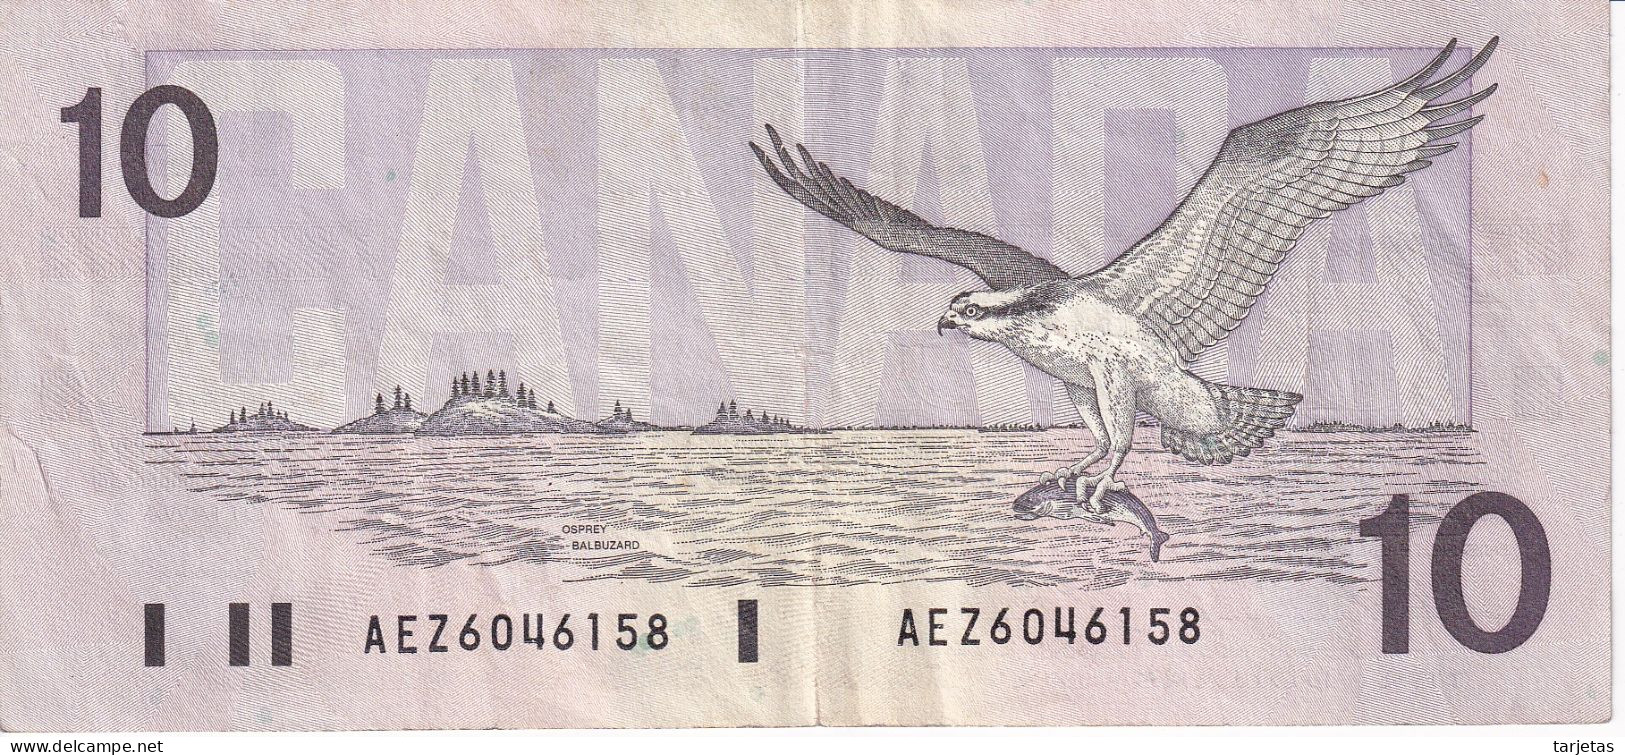 BILLETE DE CANADA DE 10 DOLLARS DEL AÑO 1989 (BANKNOTE) - Kanada